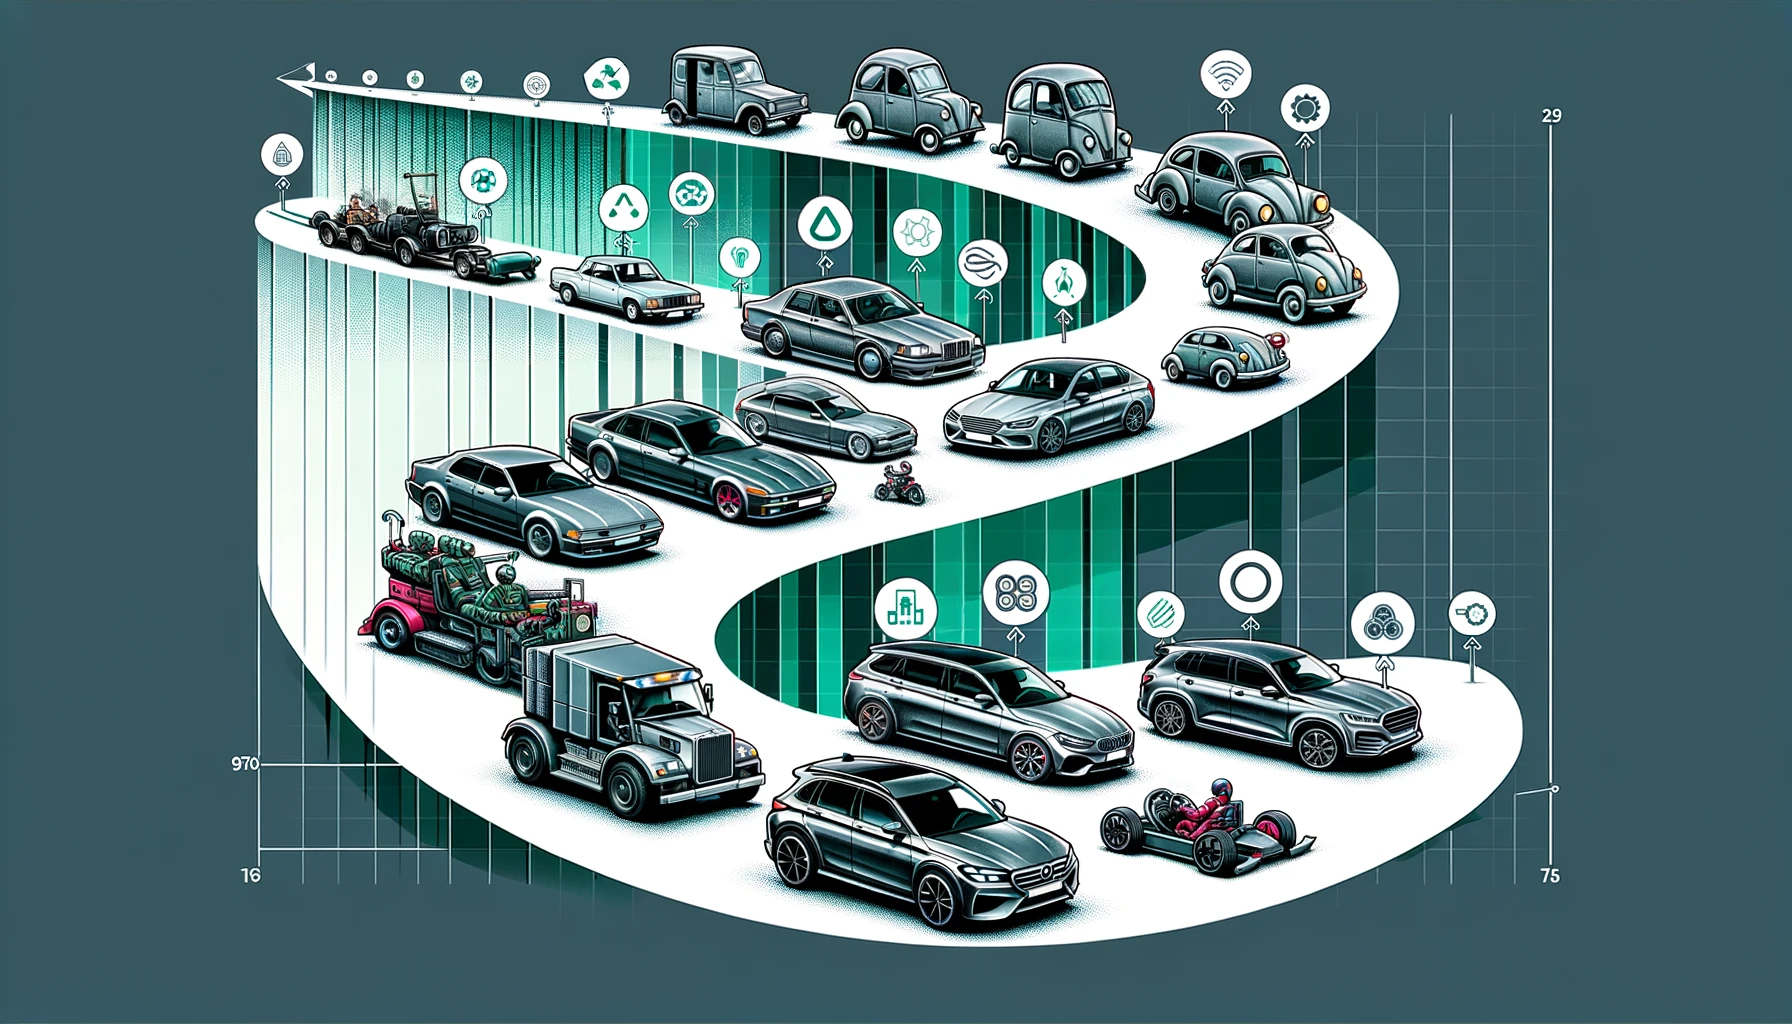 Ewolucja bezpieczeństwa samochodowego: od pasów bezpieczeństwa do systemów autonomicznych